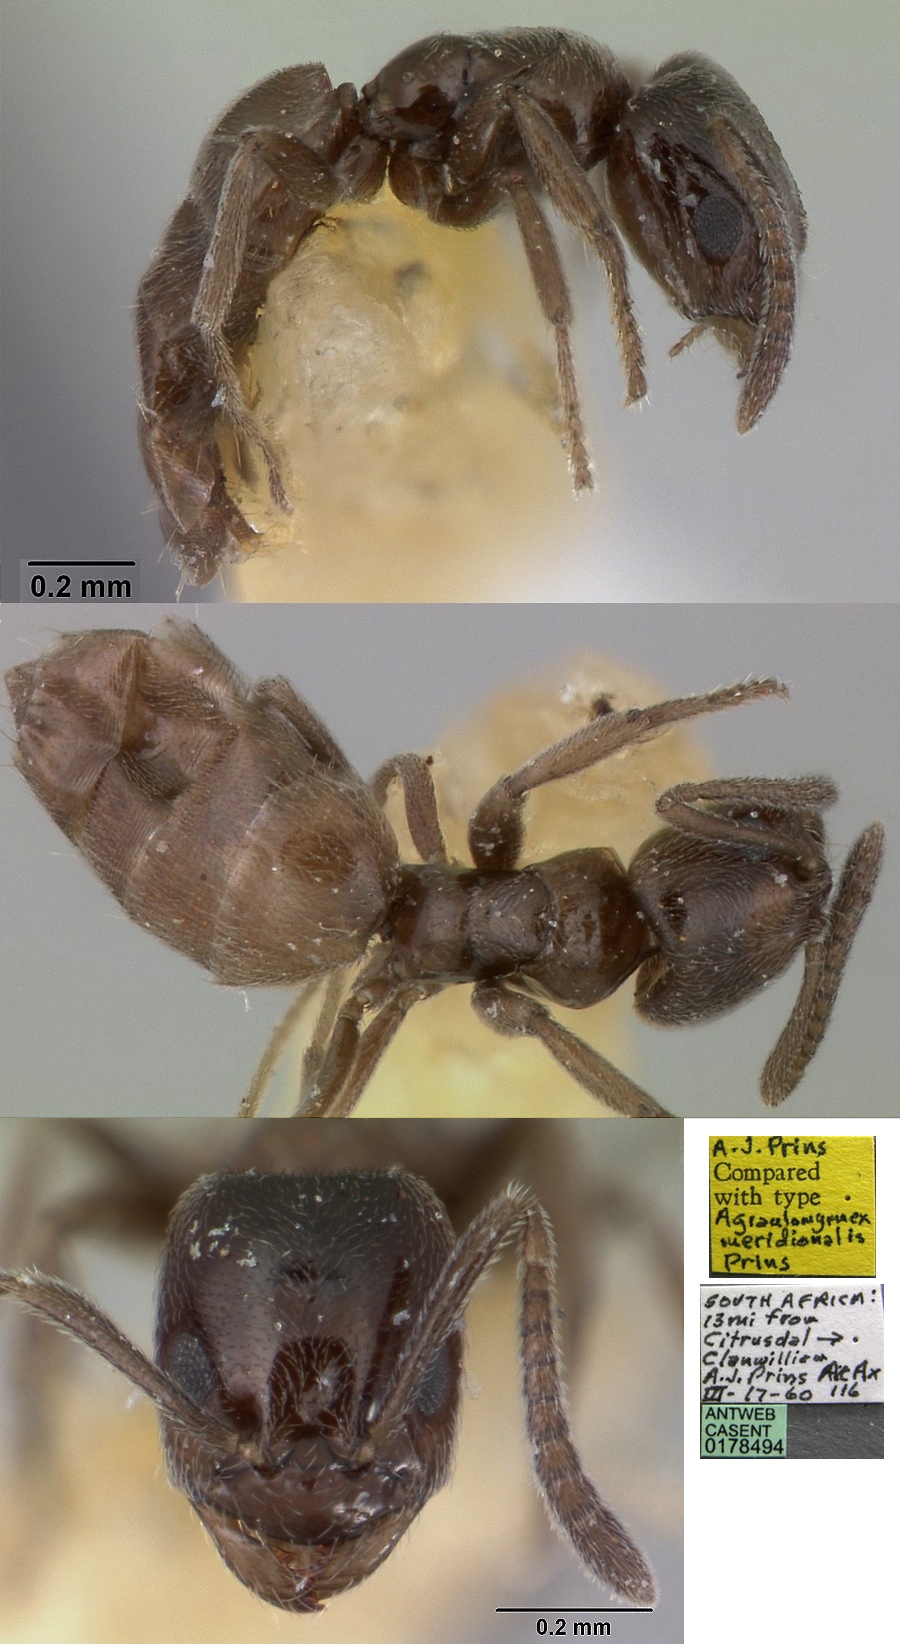 Agraulomyrmex meridionalis